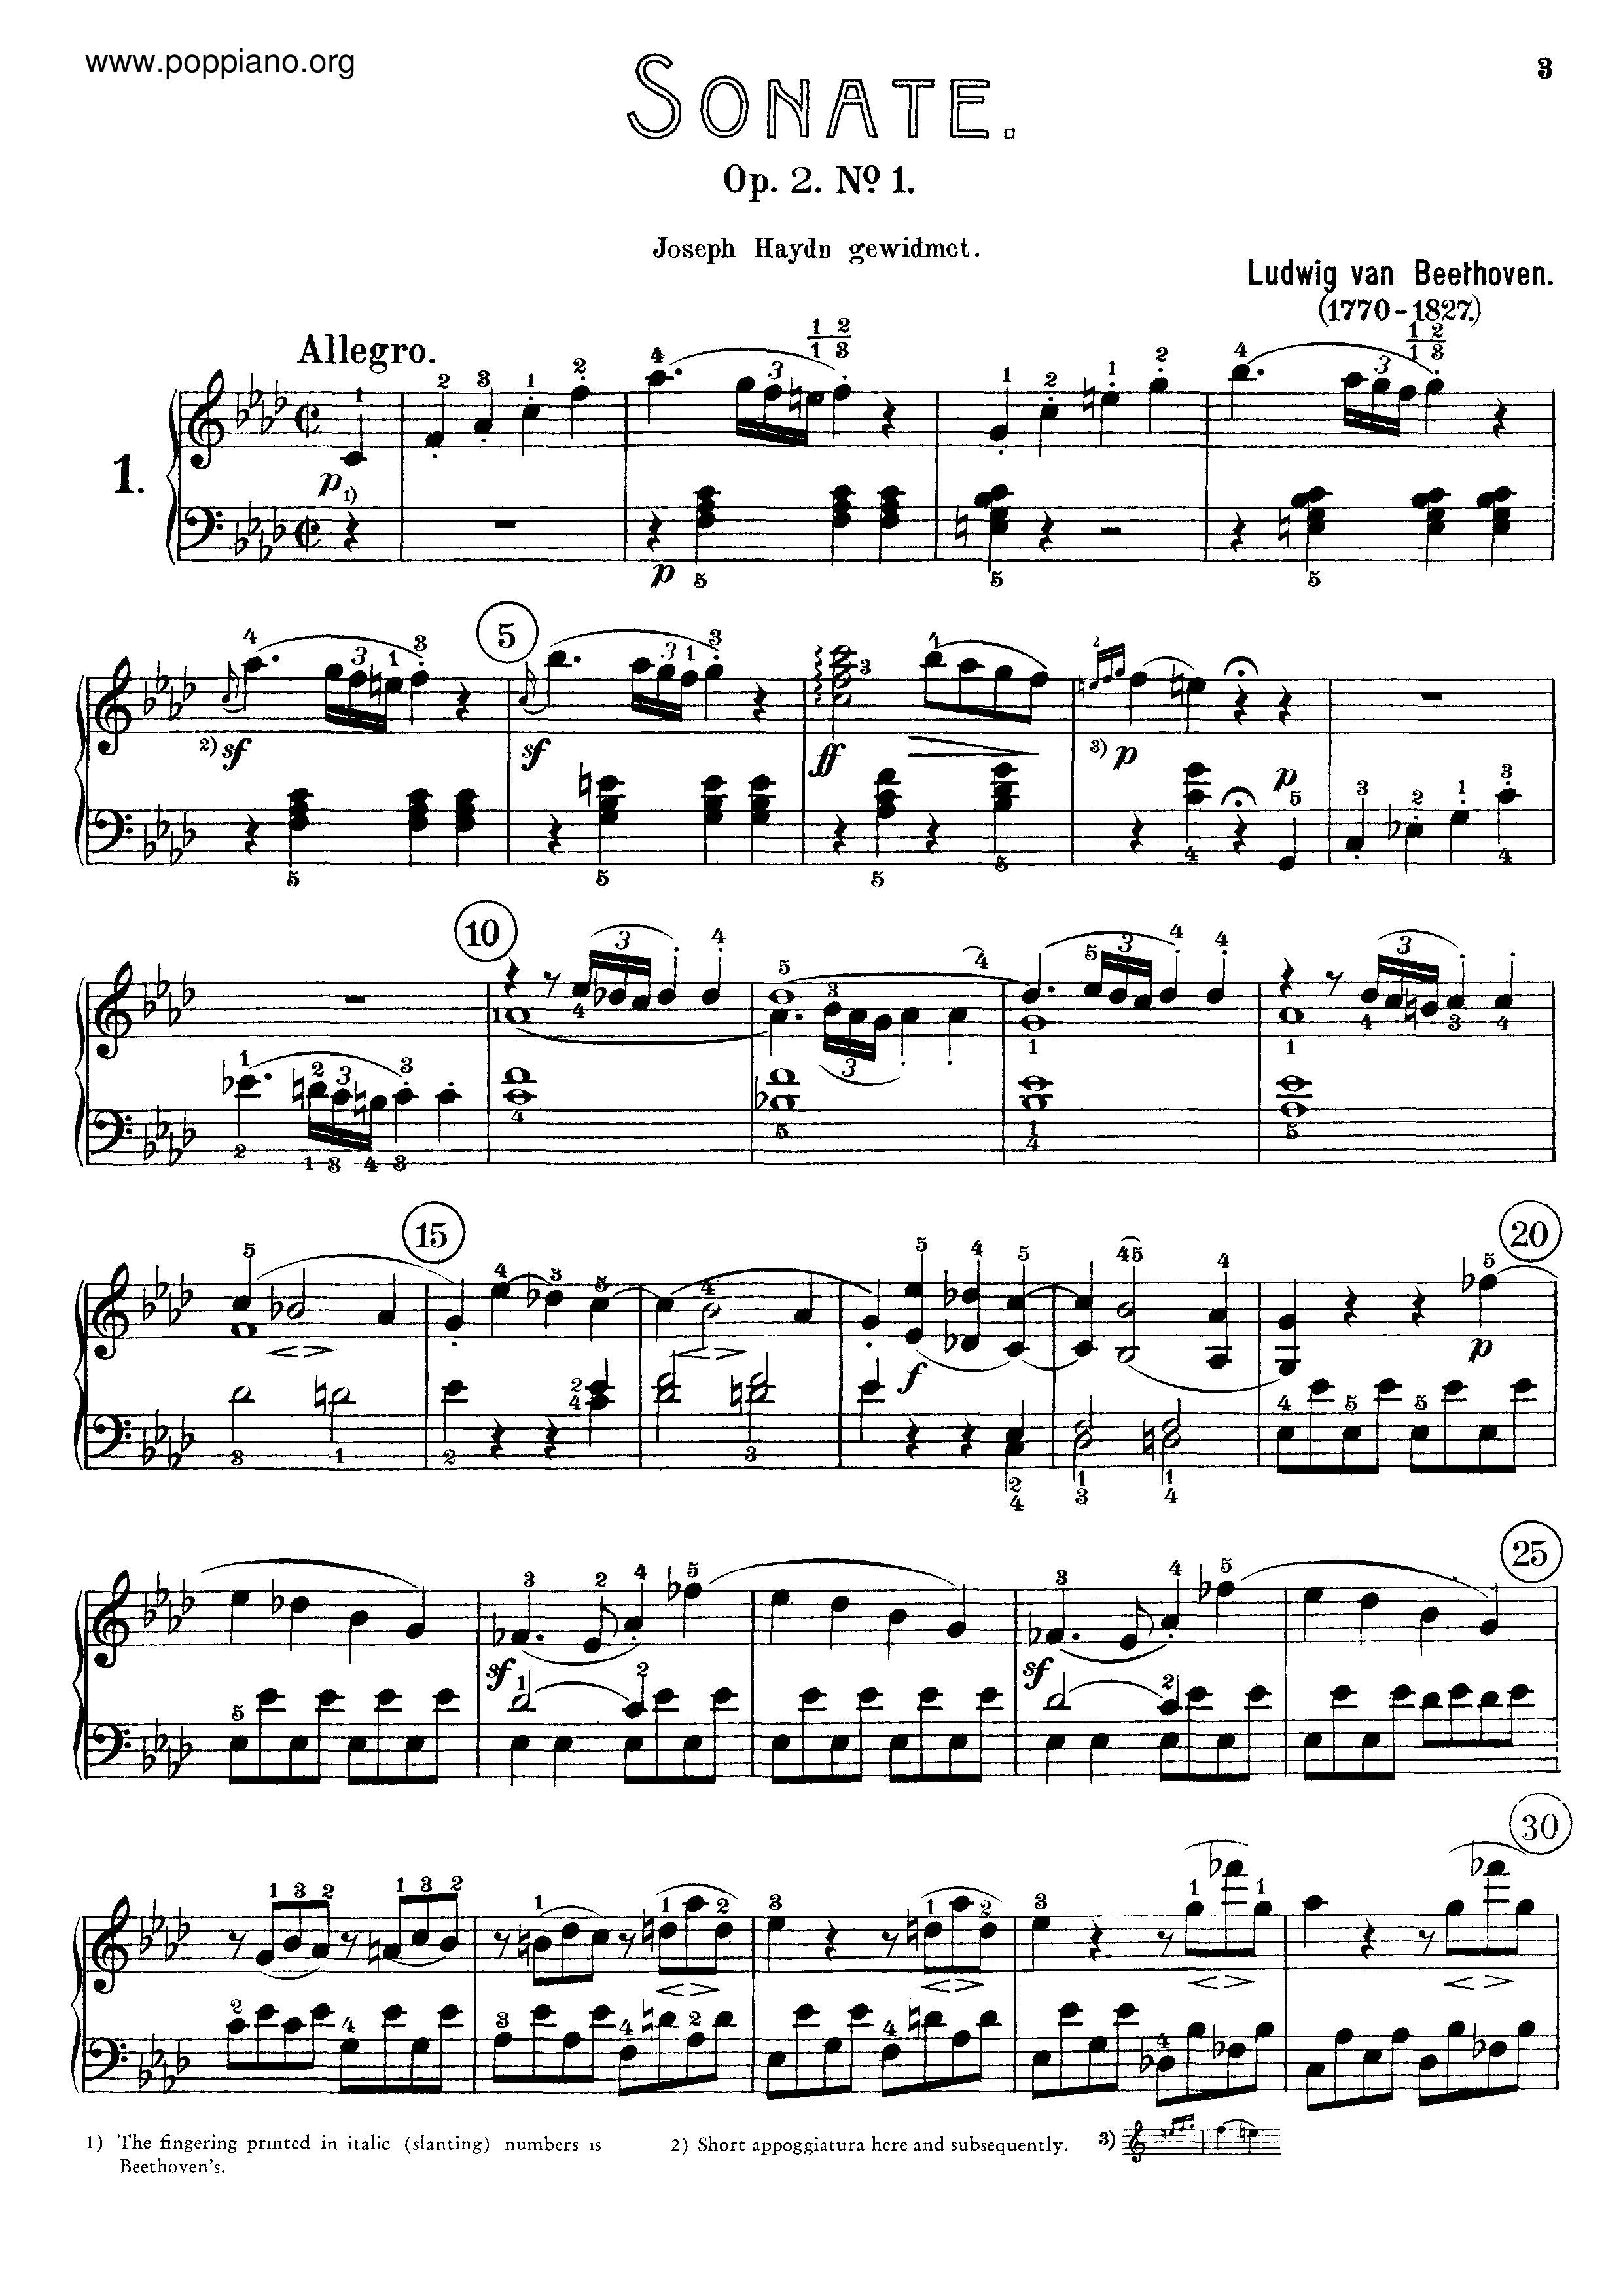 Sonata No. 1 in F minorピアノ譜